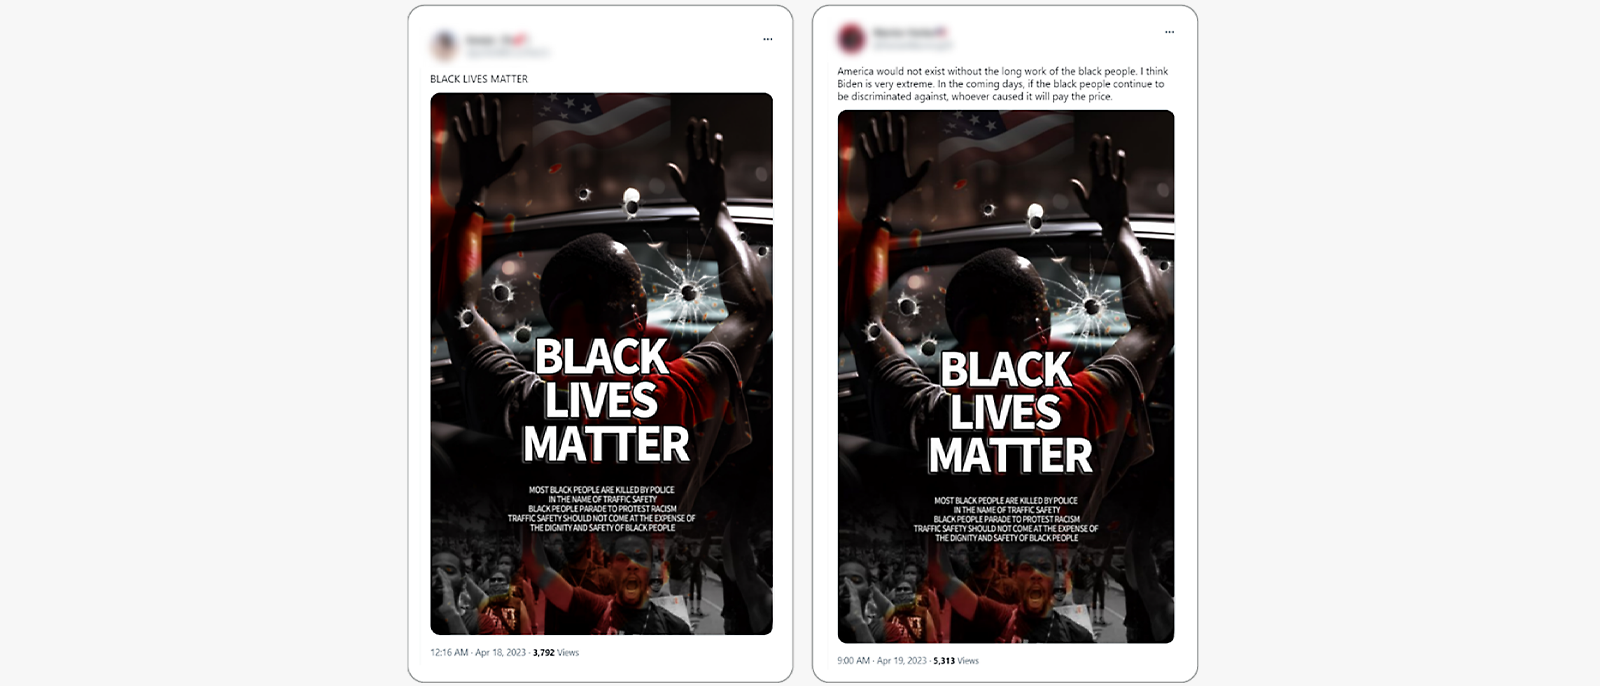 社交媒體貼文並排展示相同的「黑命貴」(Black Lives Matter) 影像。